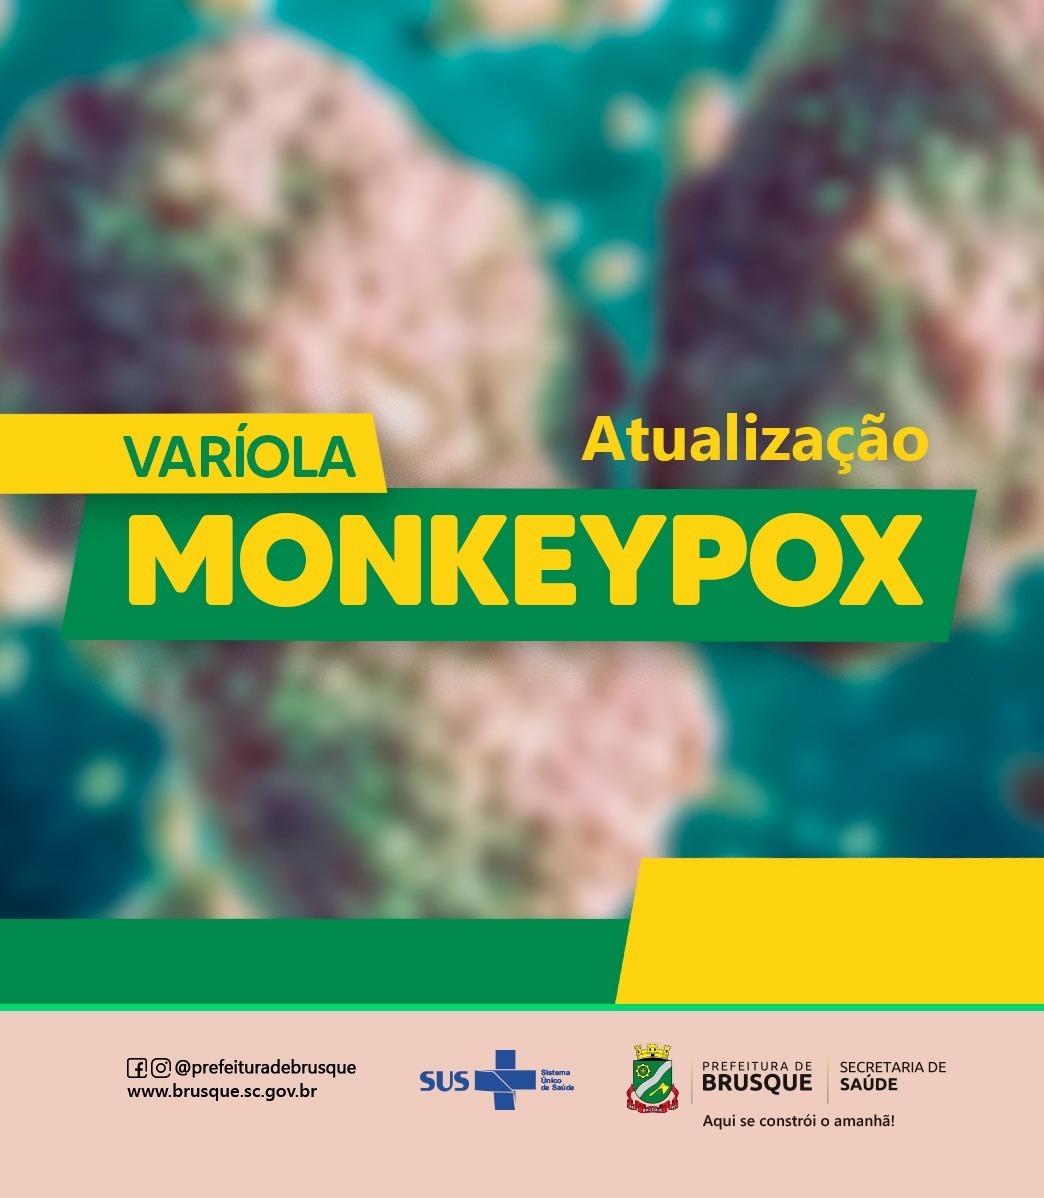 Secretaria de Saúde de Brusque atualiza os números da varíola monkeypox